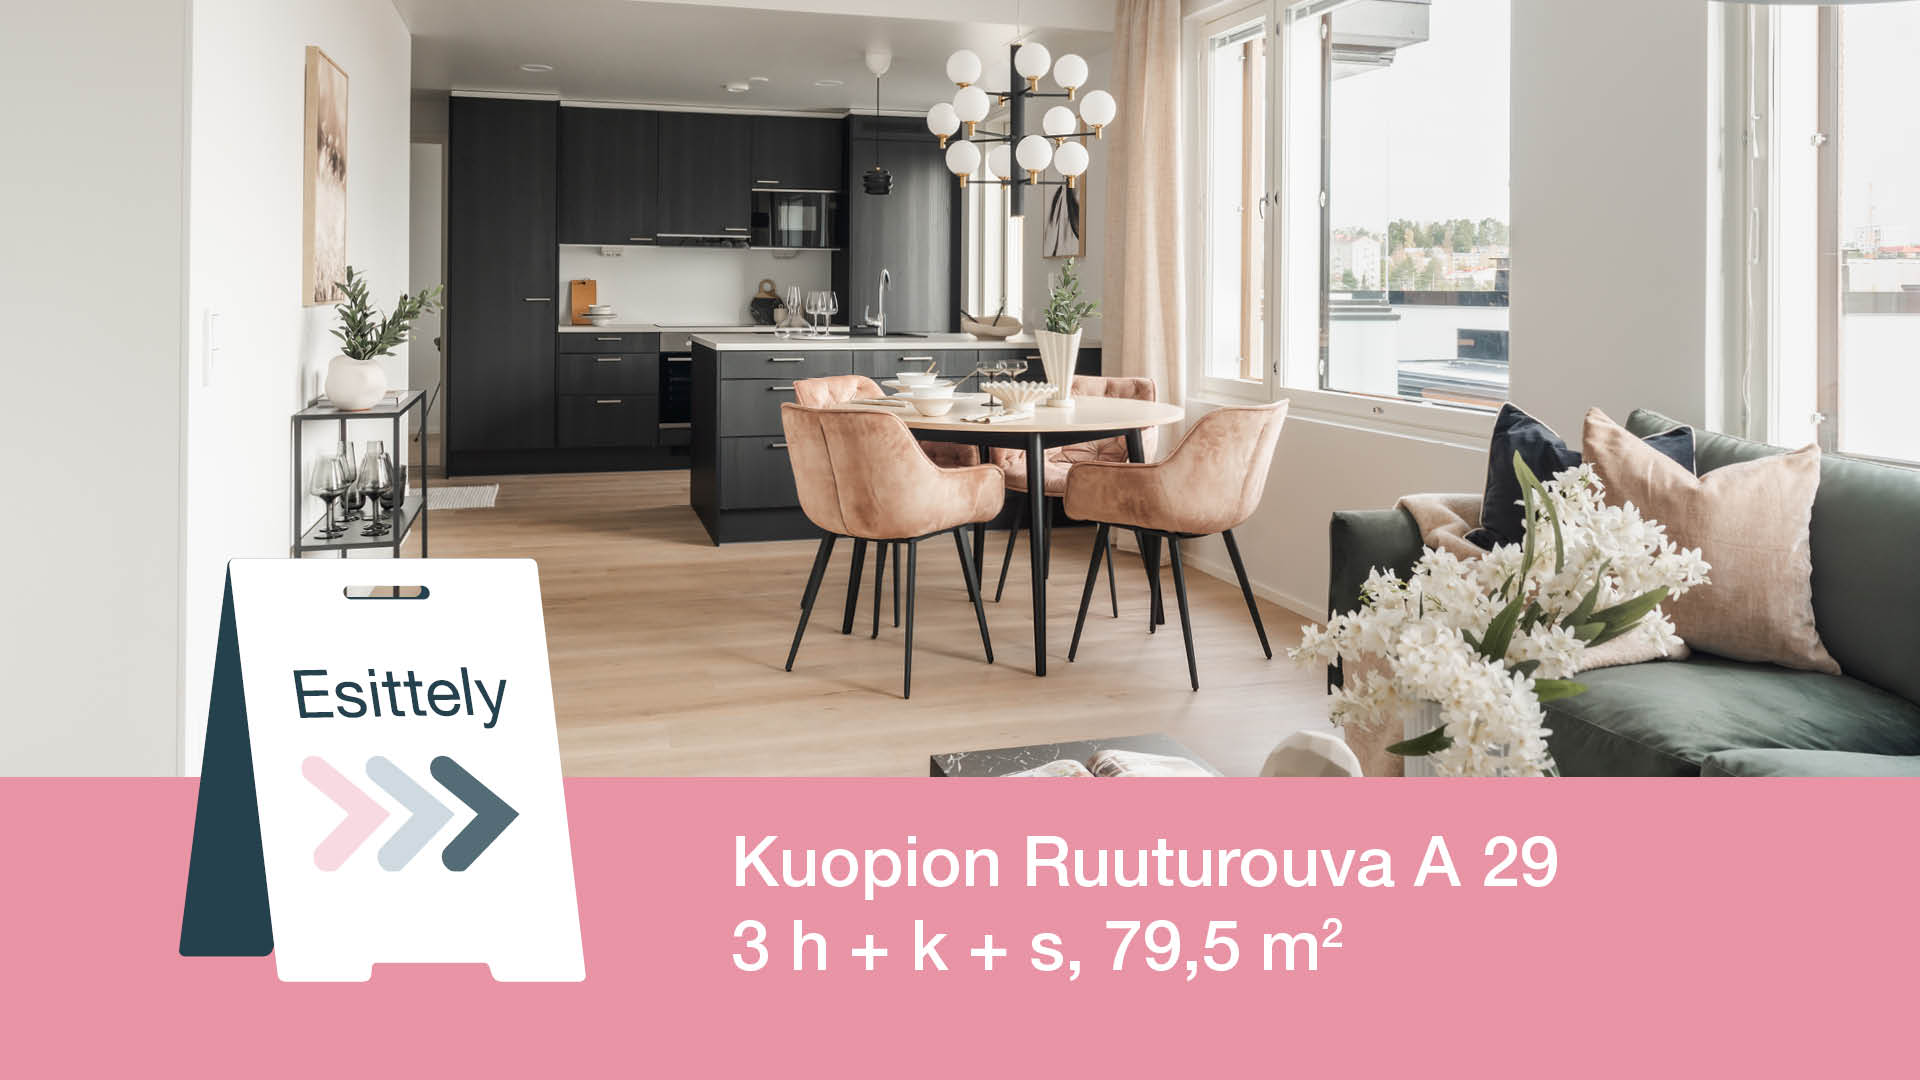 Myytävät asunnot Kuopion keskustassa. Kuopion Ruuturouva.